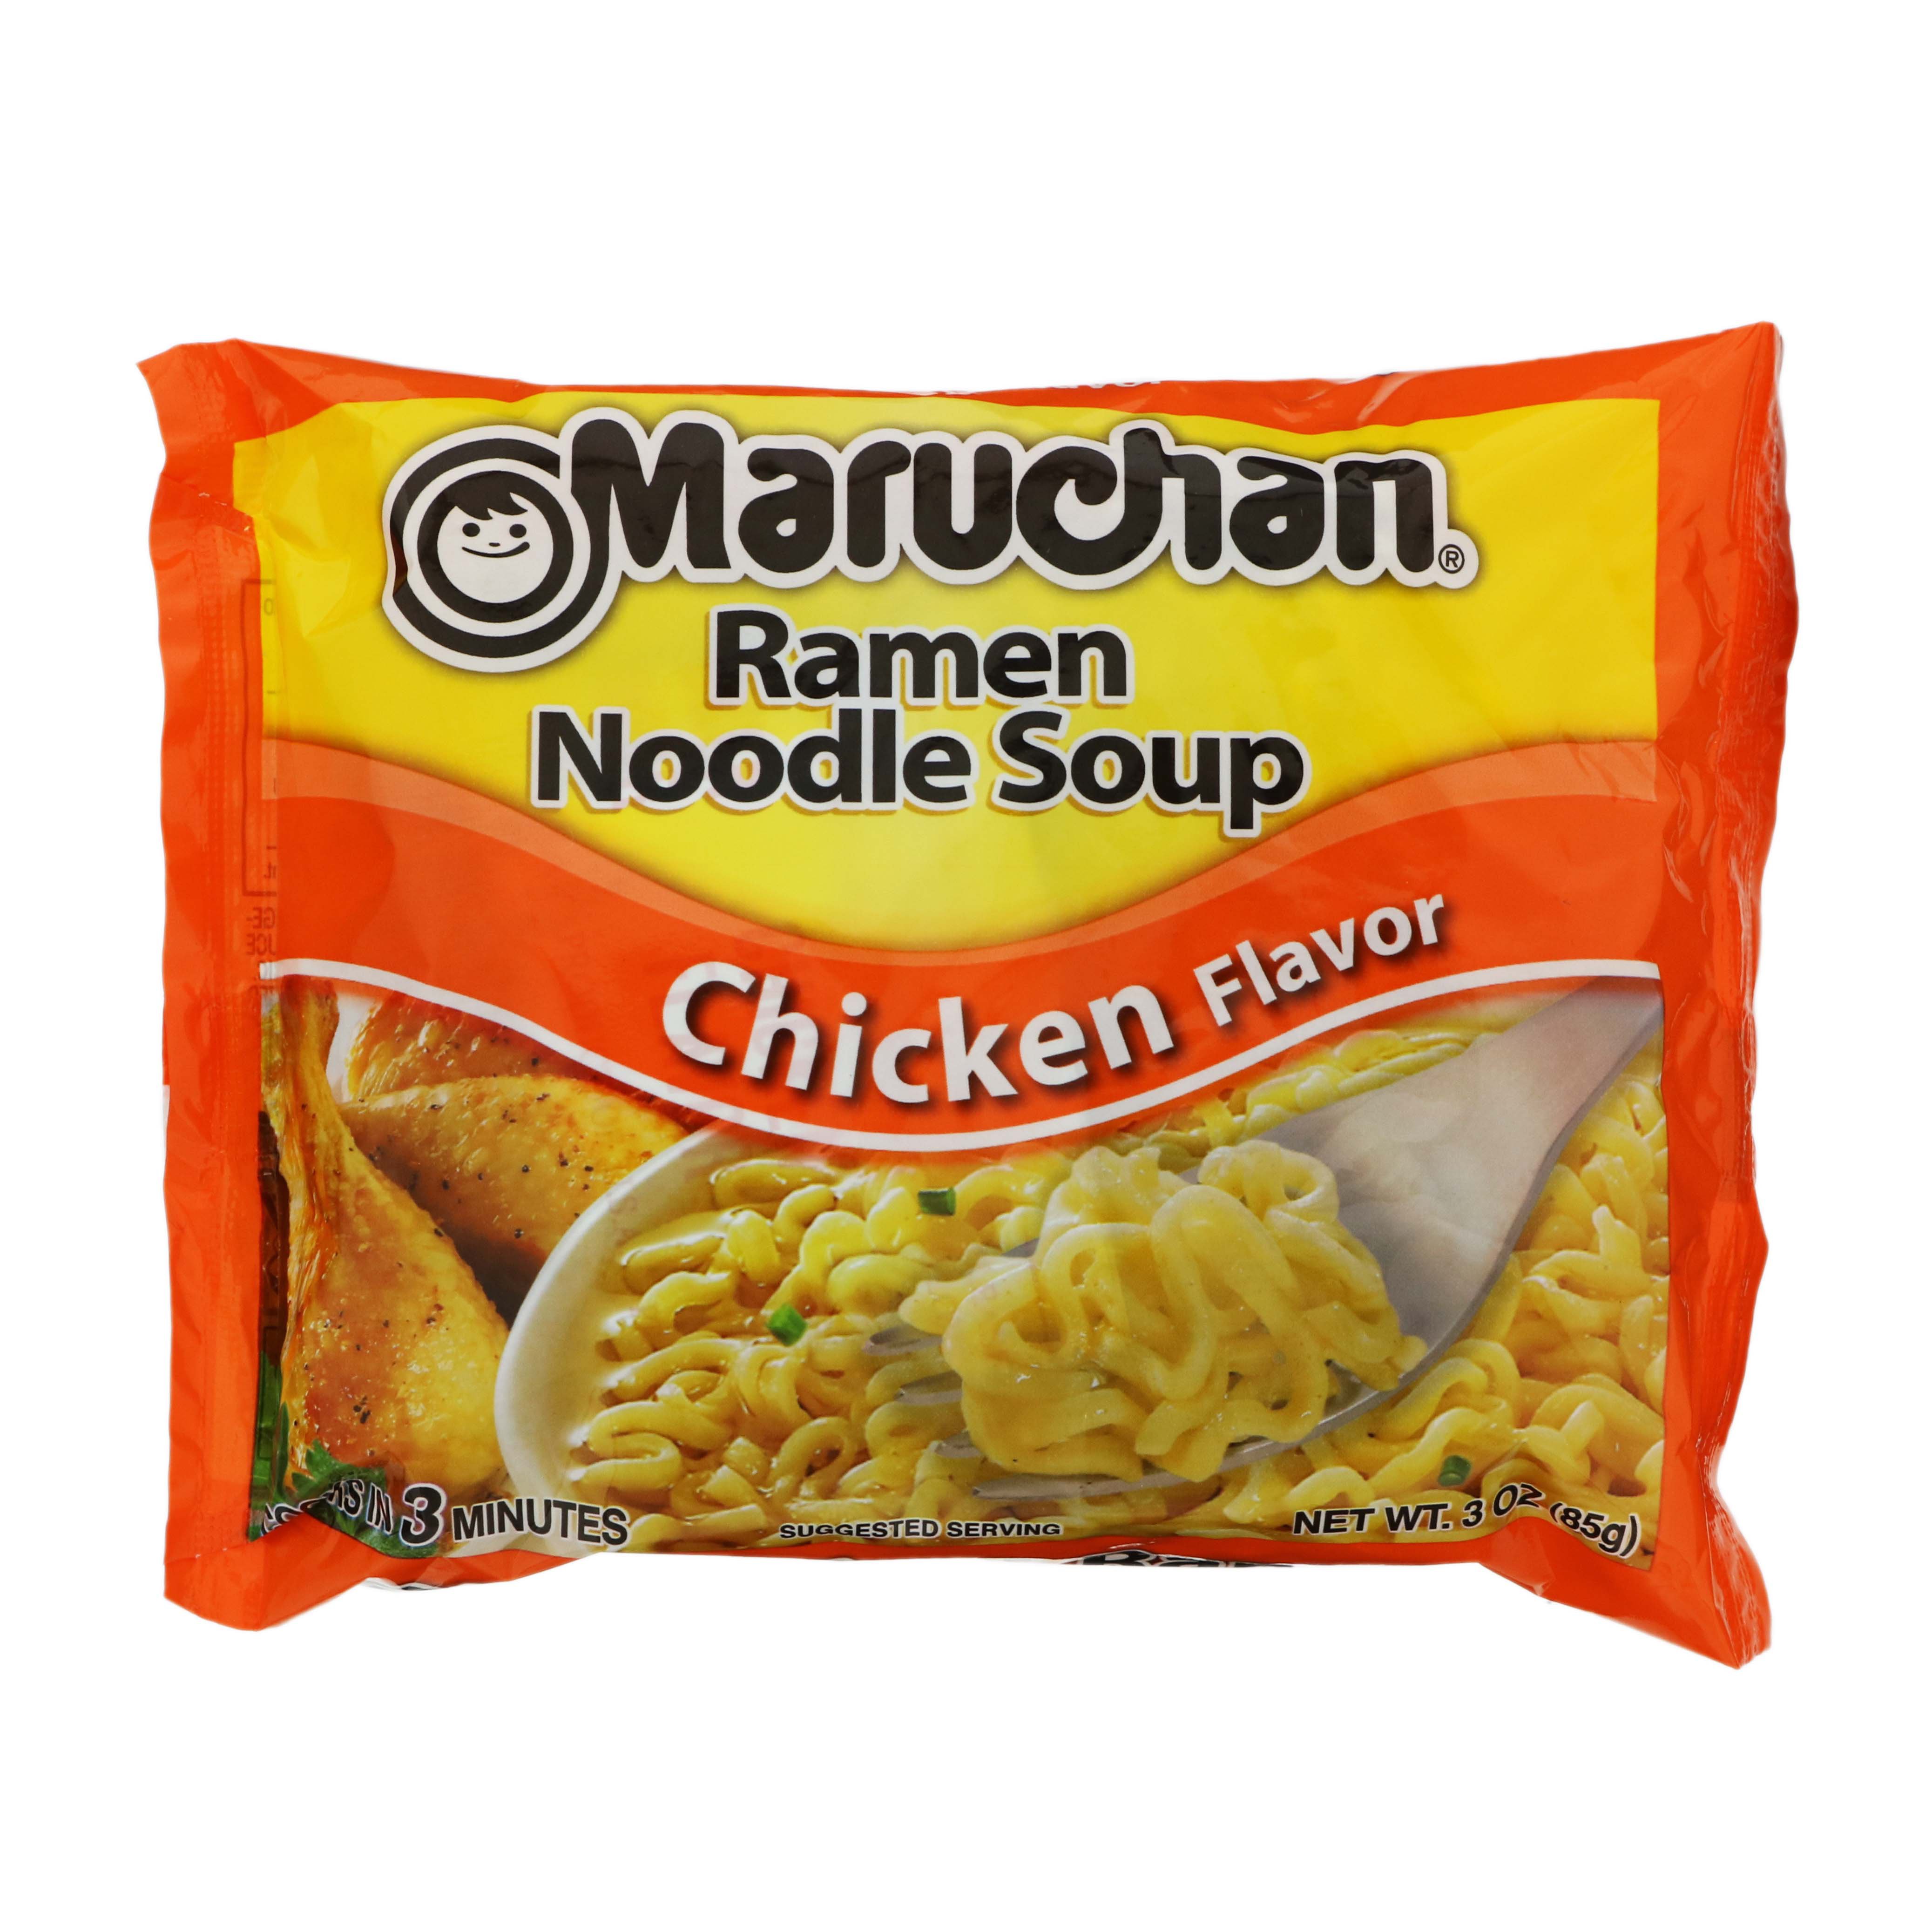 Maruchan Chicken Flavor Ramen Noodle Soup - Shop Soups & Chili at H-E-B